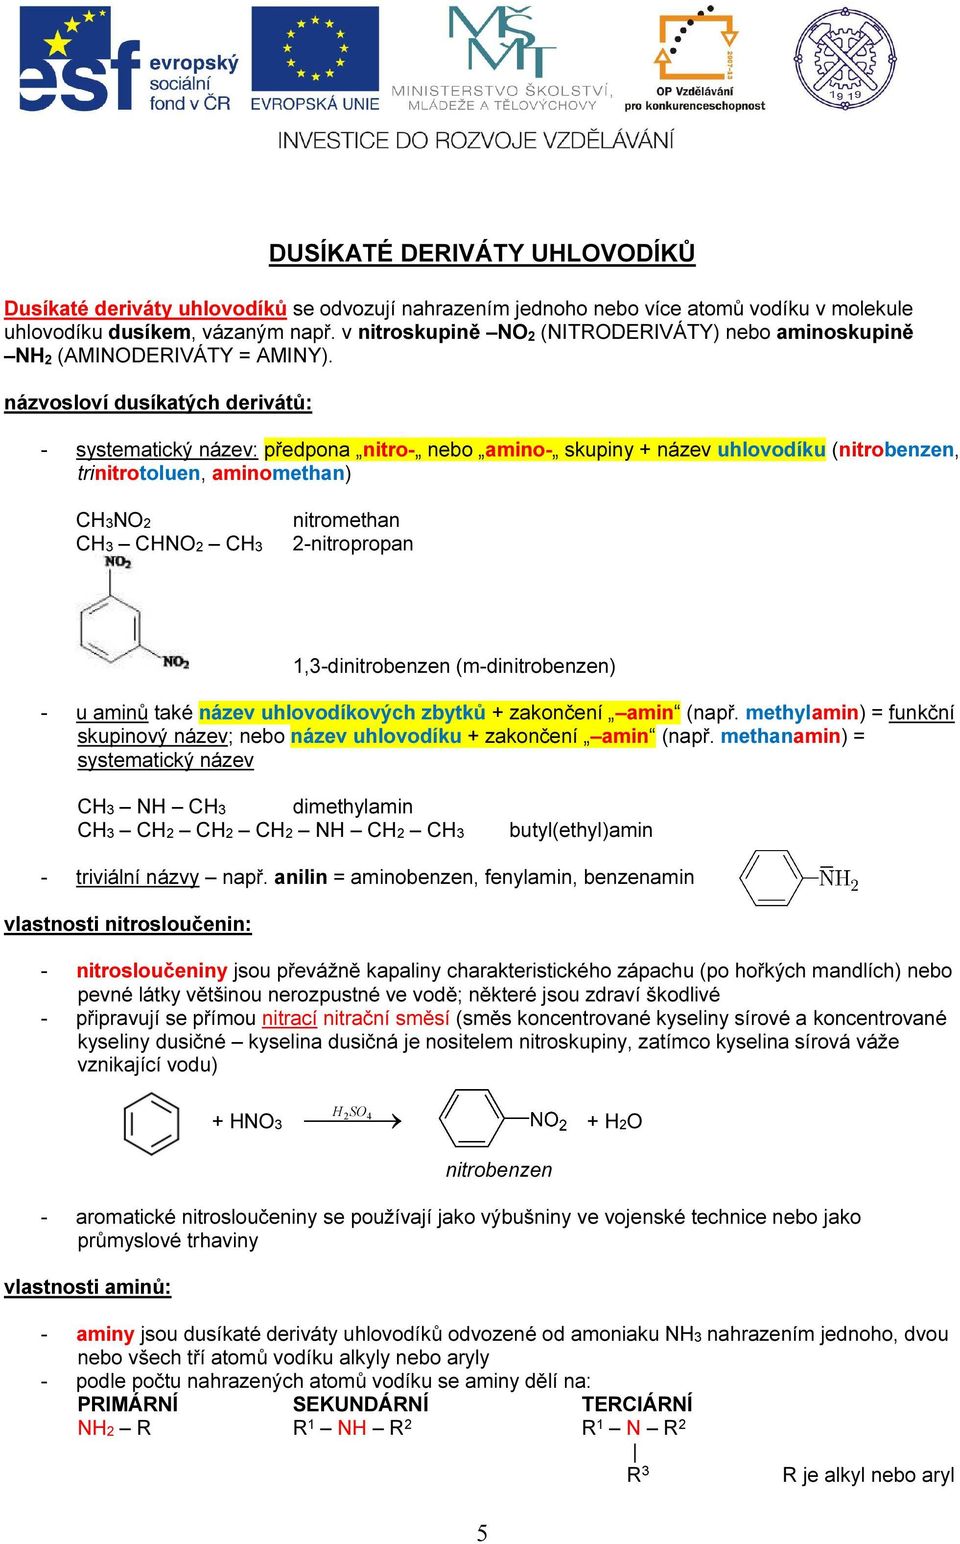 názvosloví dusíkatých derivátů: - systematický název: předpona nitro- nebo amino- skupiny + název uhlovodíku (nitrobenzen, trinitrotoluen, aminomethan) CH3NO2 CH3 CHNO2 CH3 nitromethan 2-nitropropan